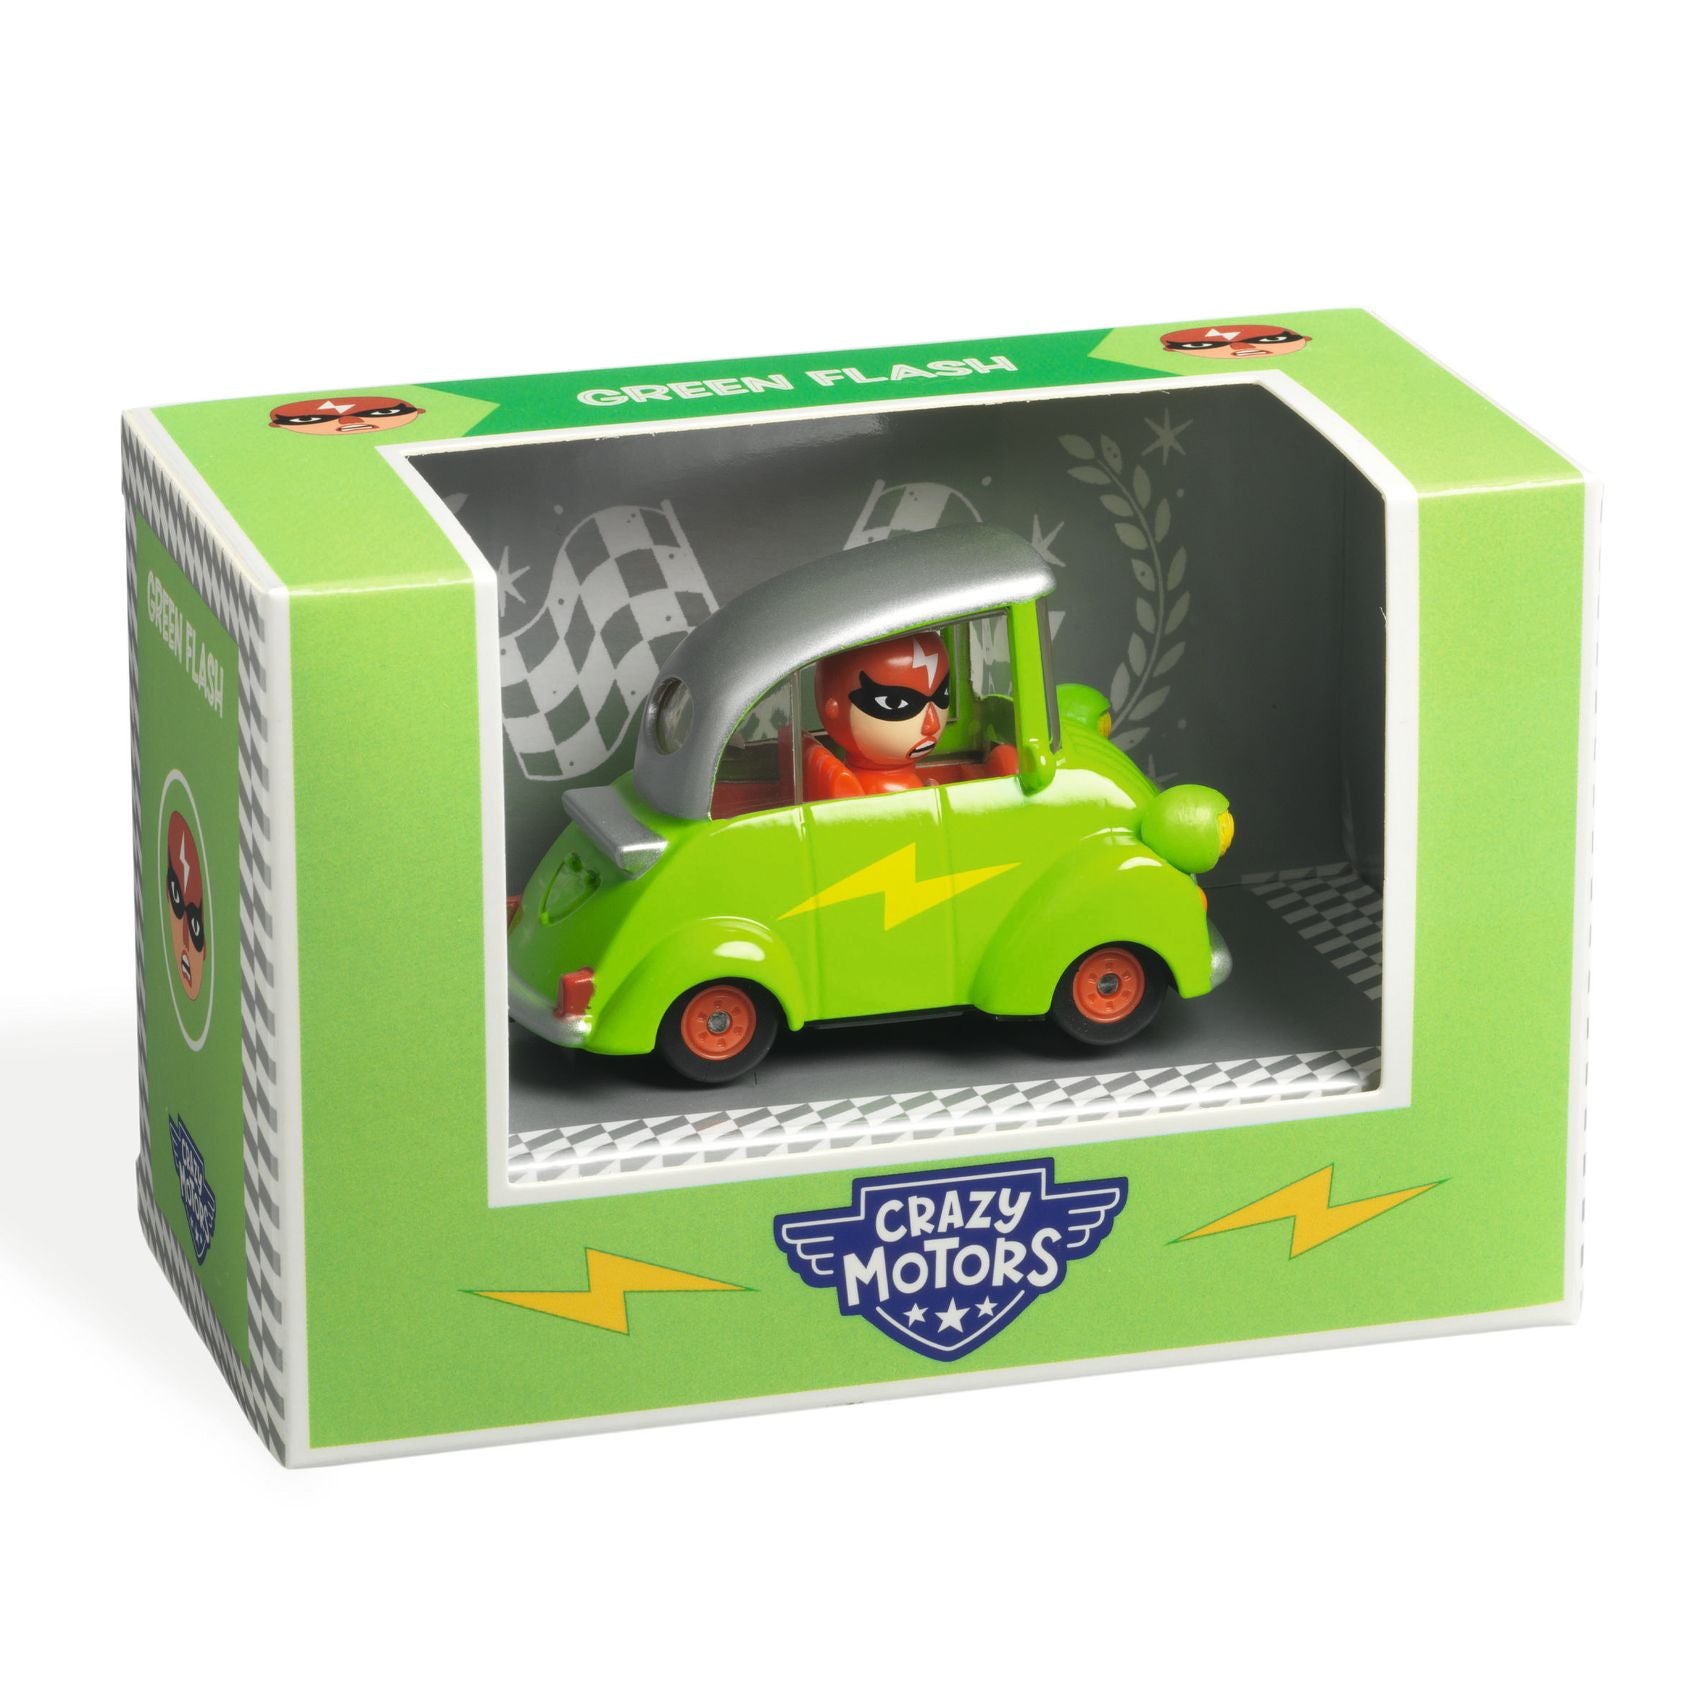 Djeco Crazy Motors – Green Flash